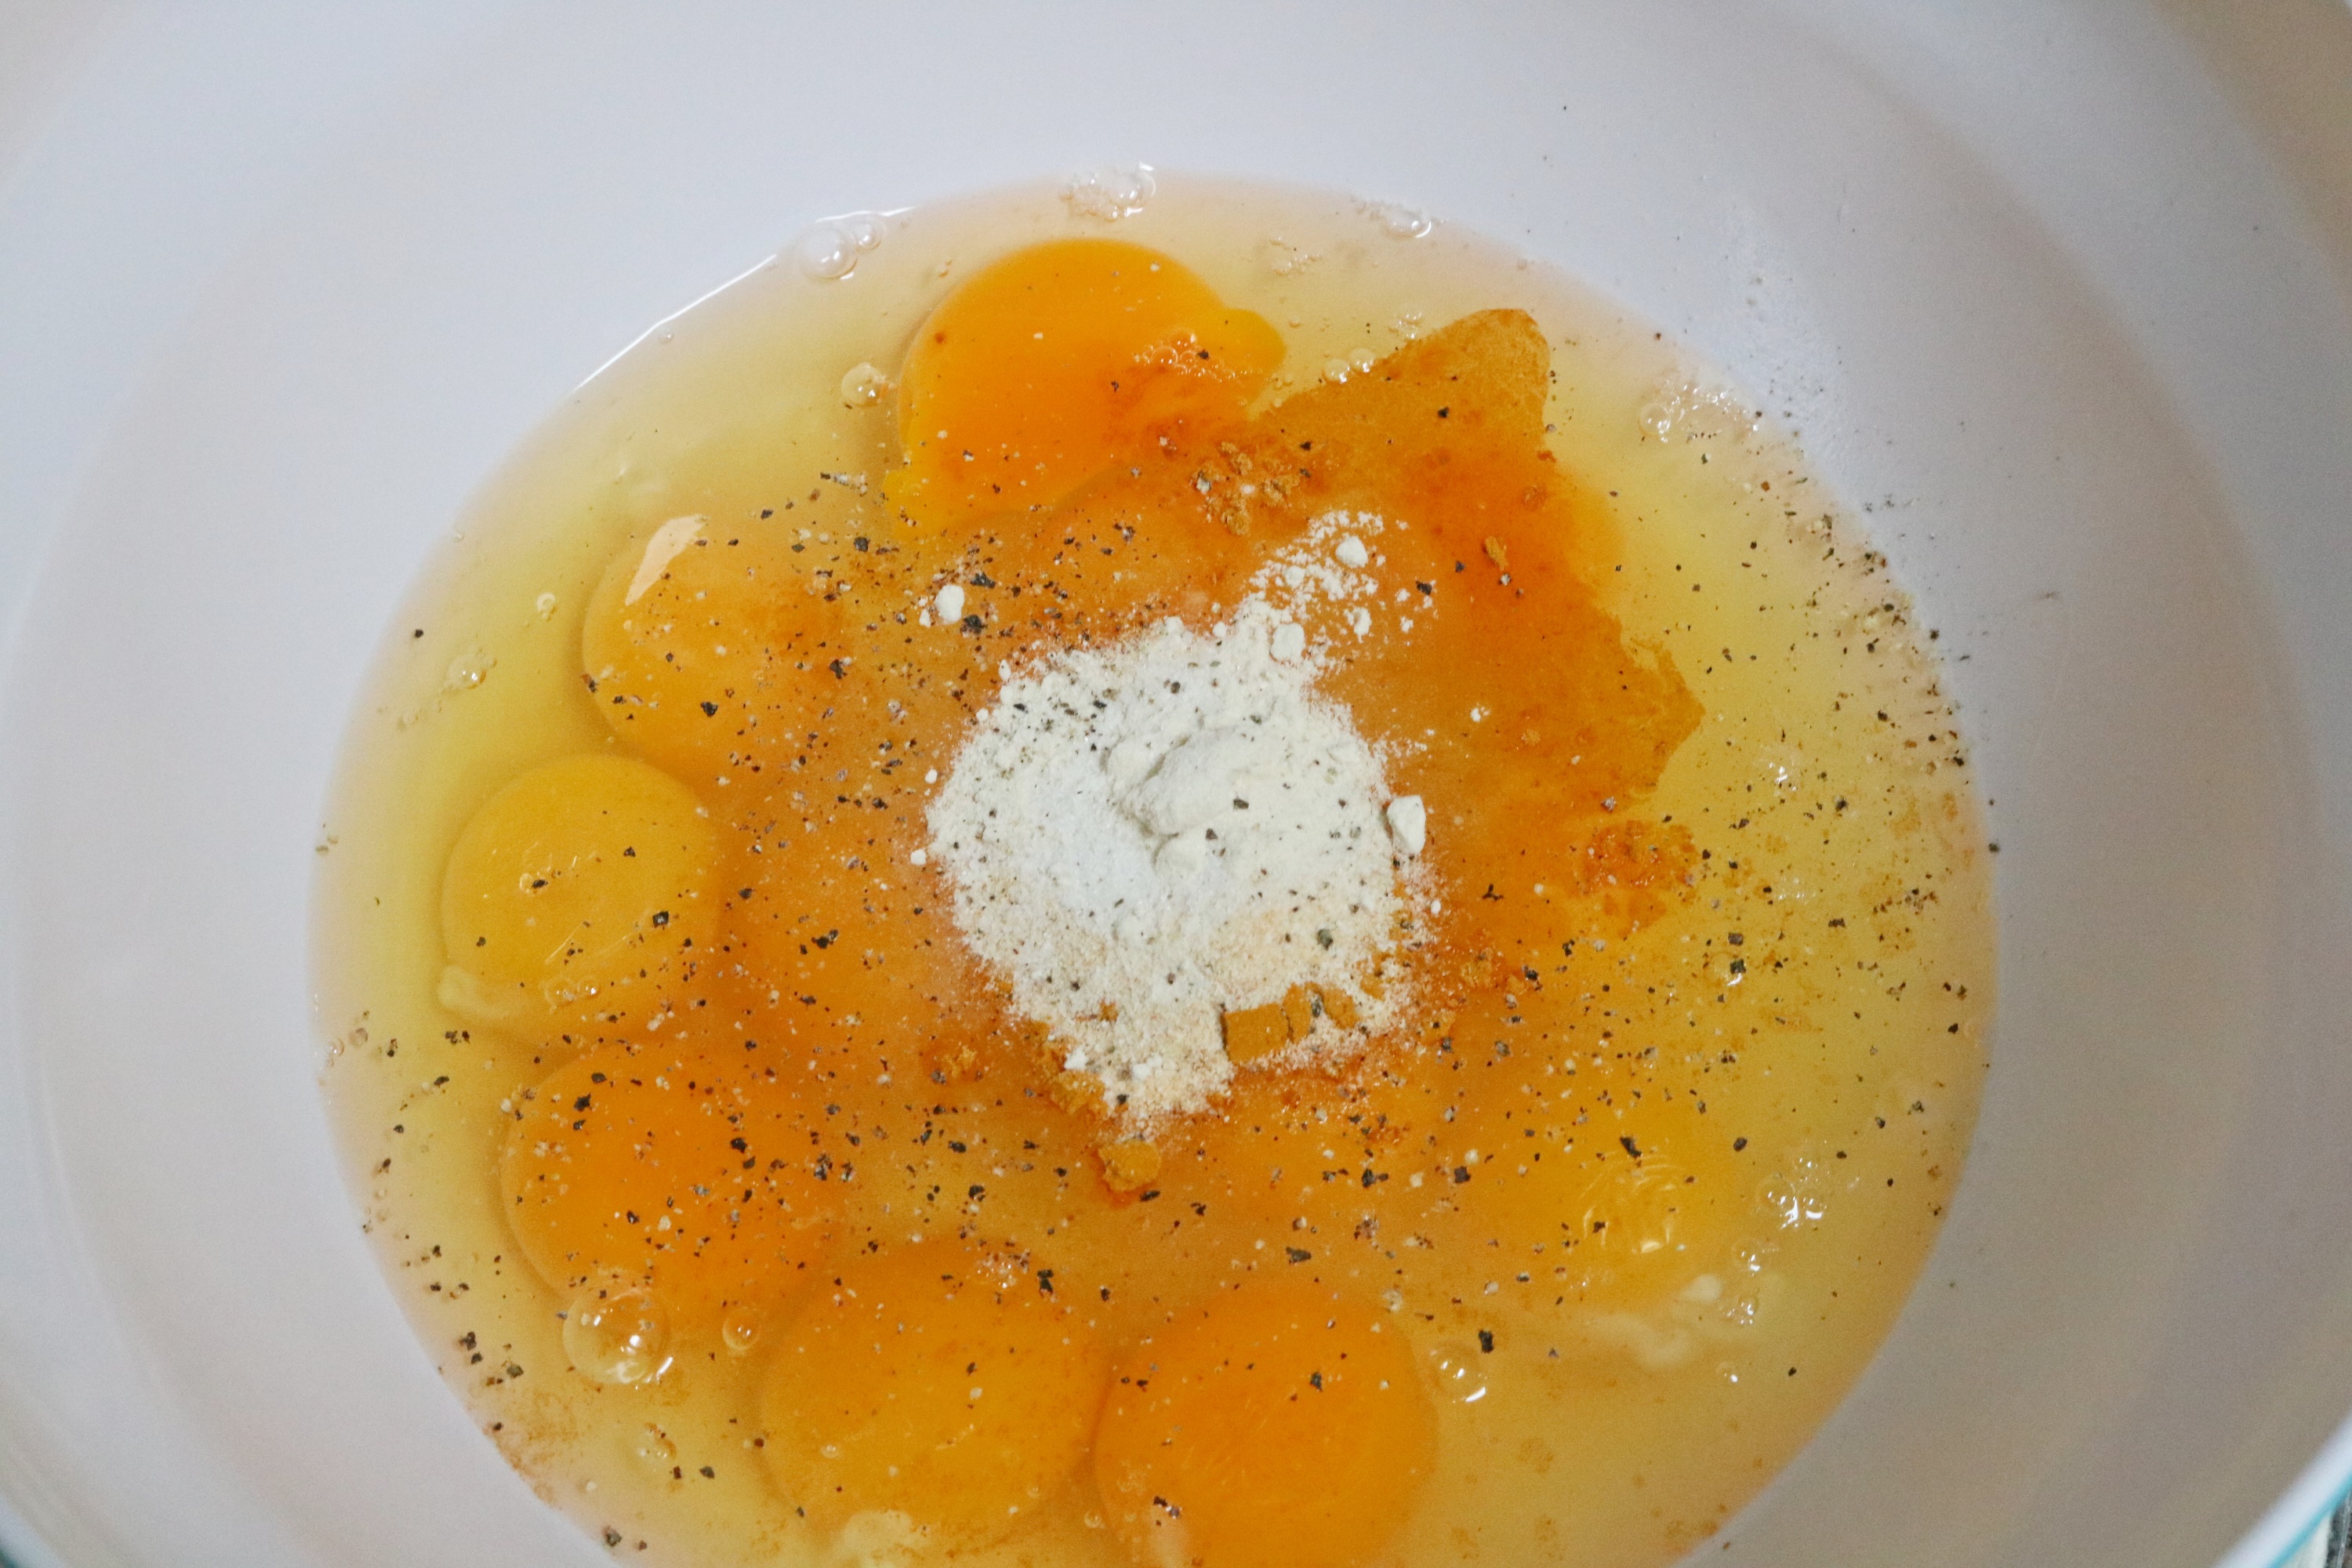 egg muffin recipe